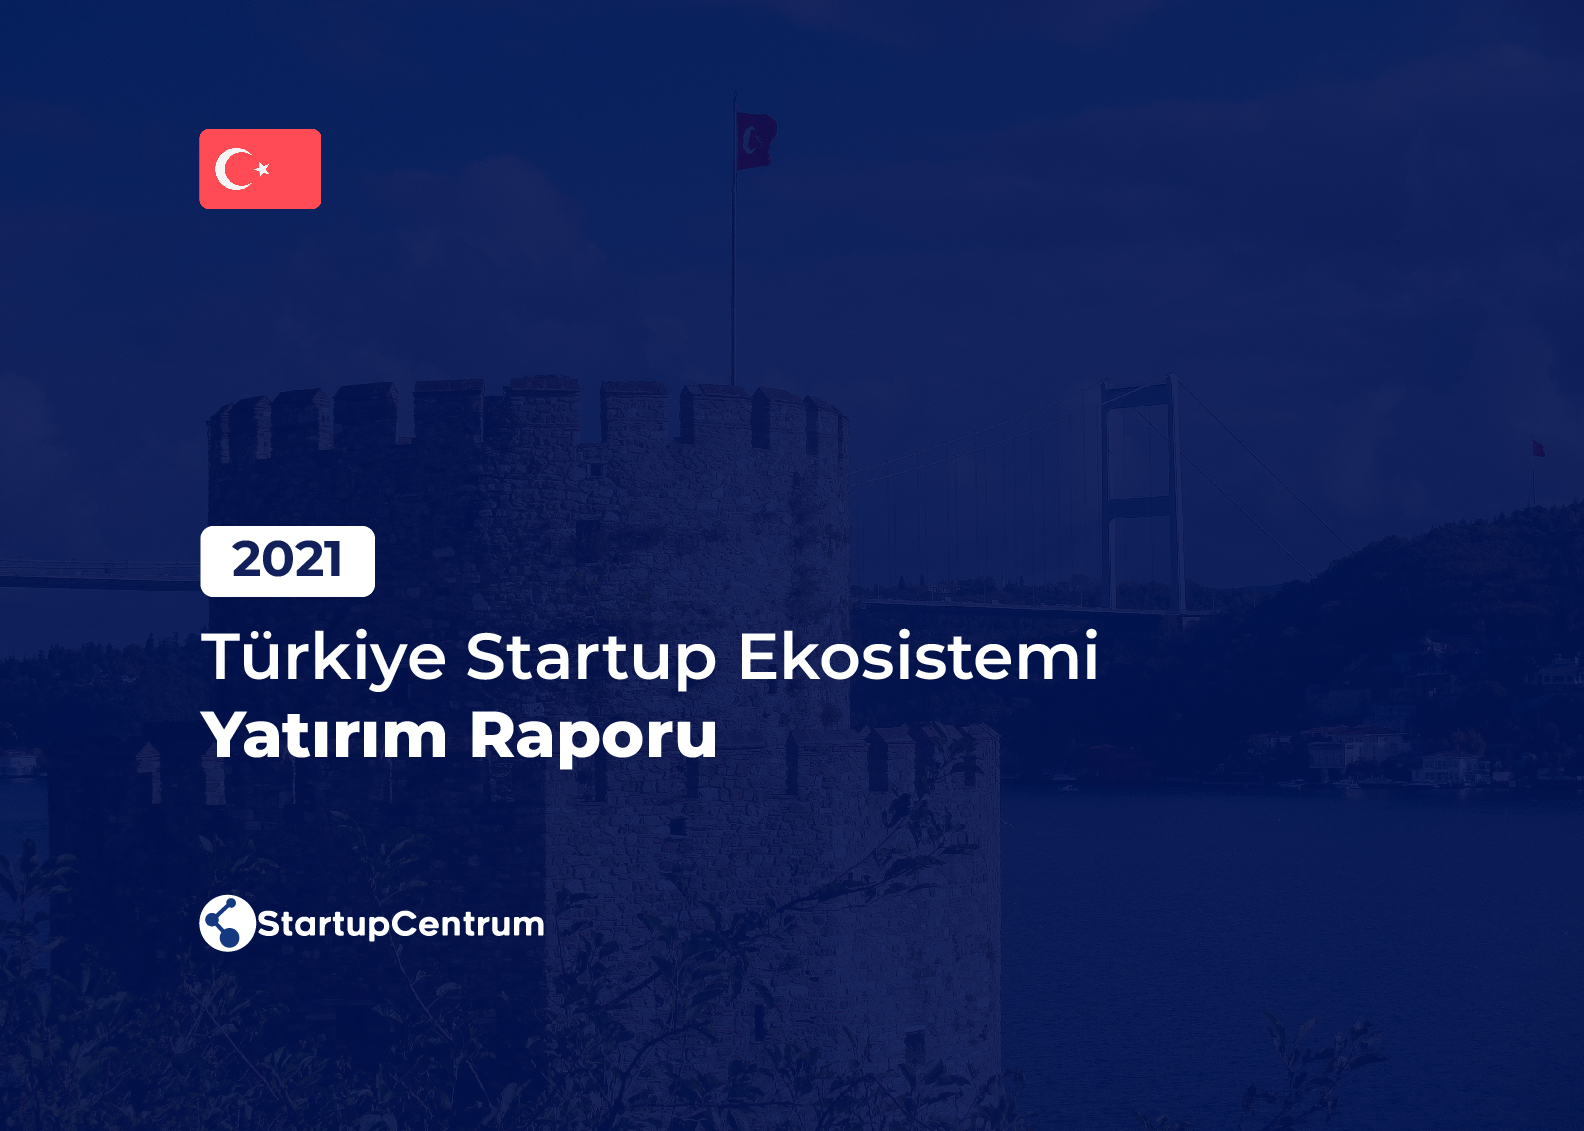 2021 - Türkiye Startup Ekosistemi Yatırım Raporu Cover Image